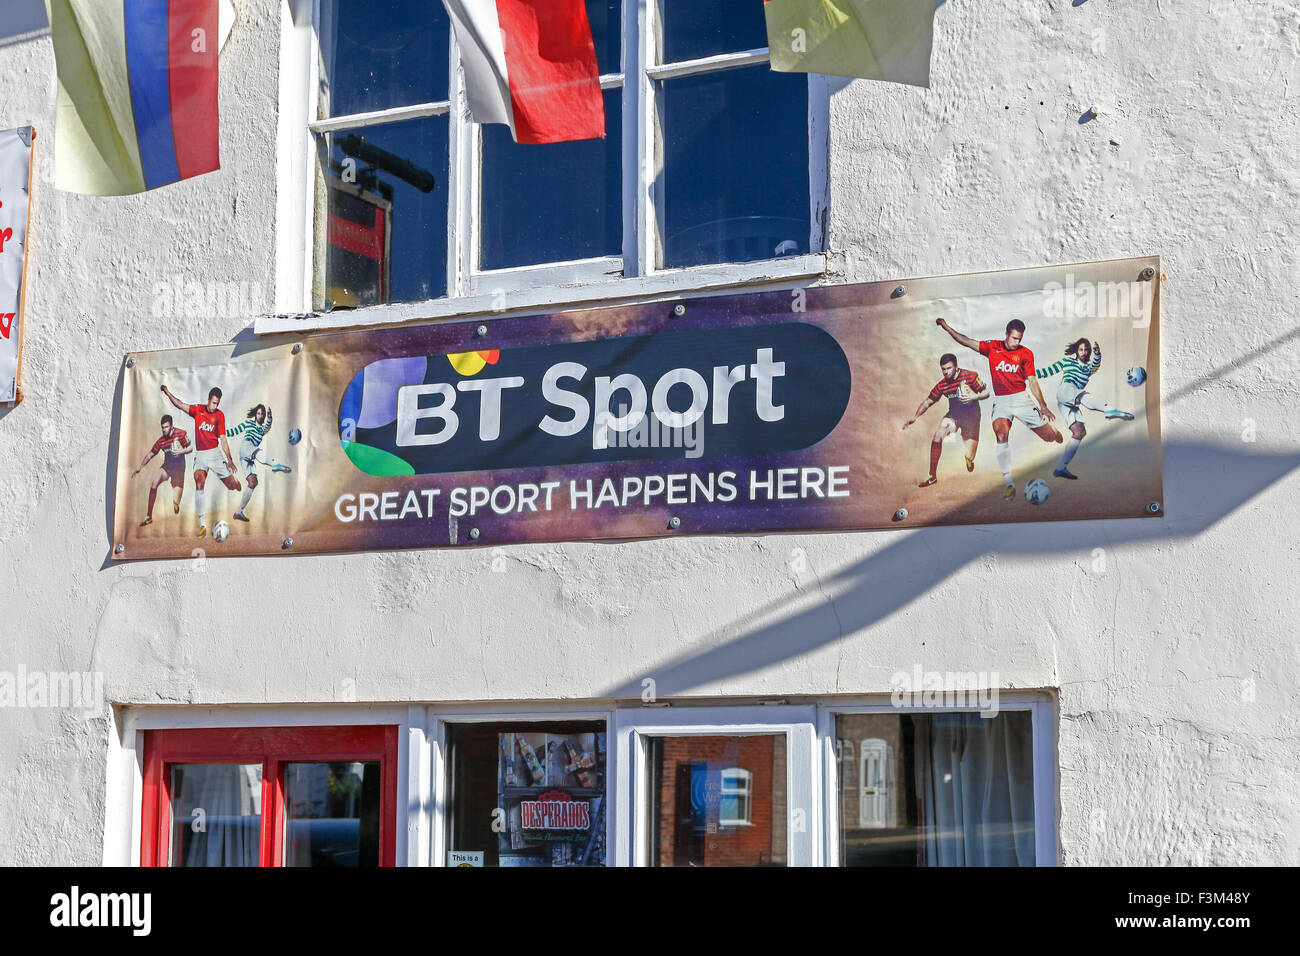 Un signe sur une pub ou public house disant bt sport illustré ici Banque D'Images